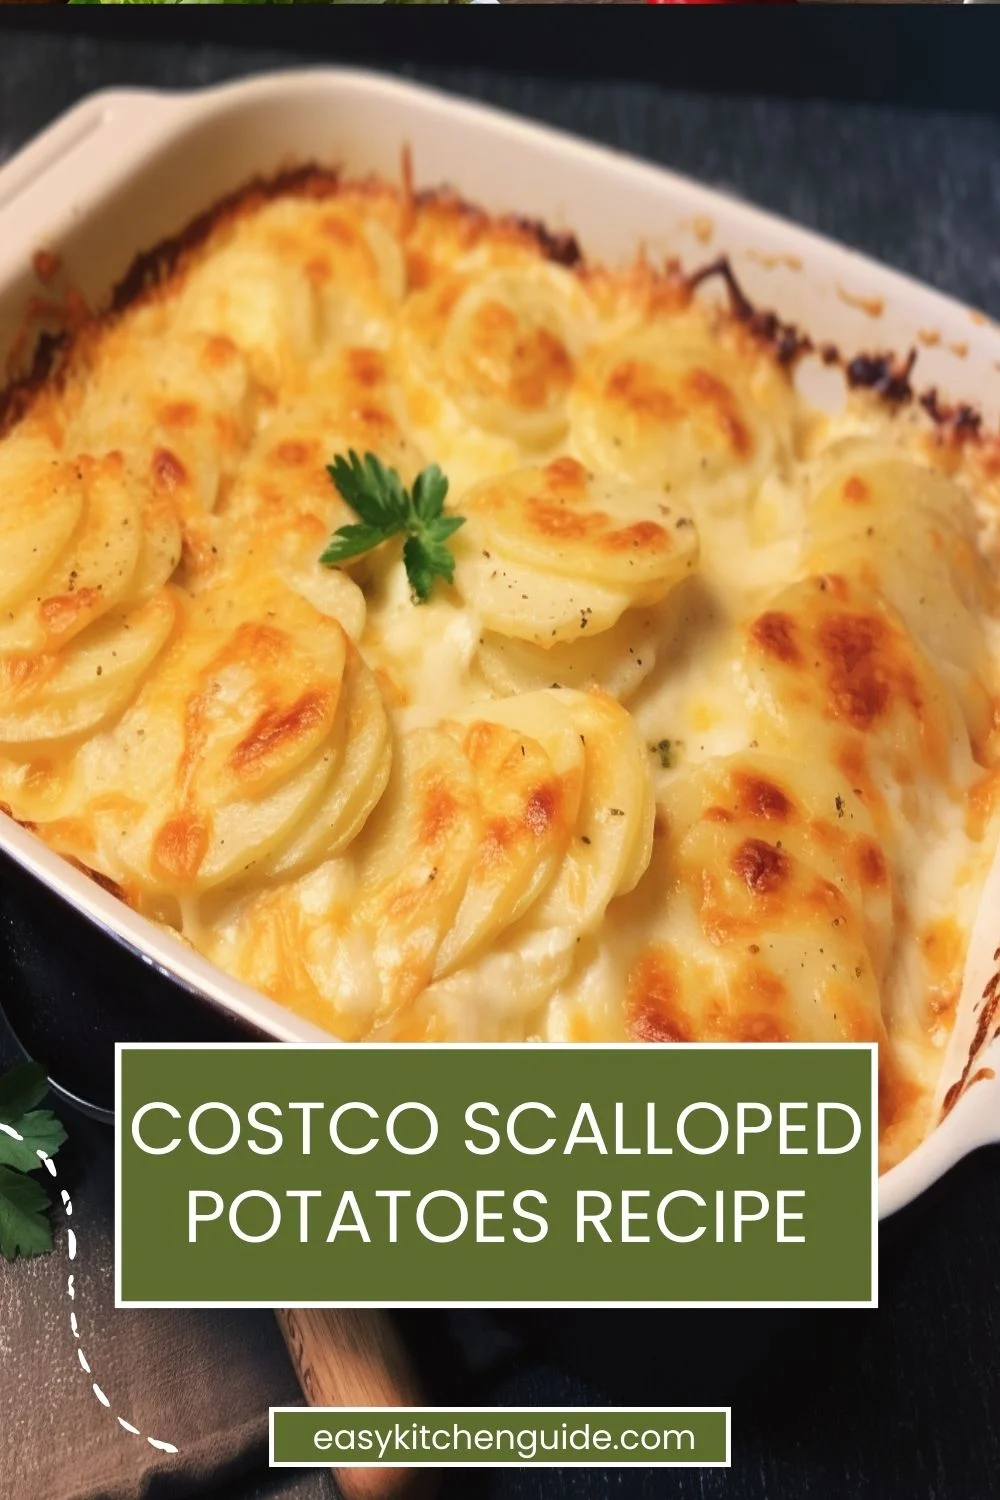 Costco Scalloped Potatoes Recipe